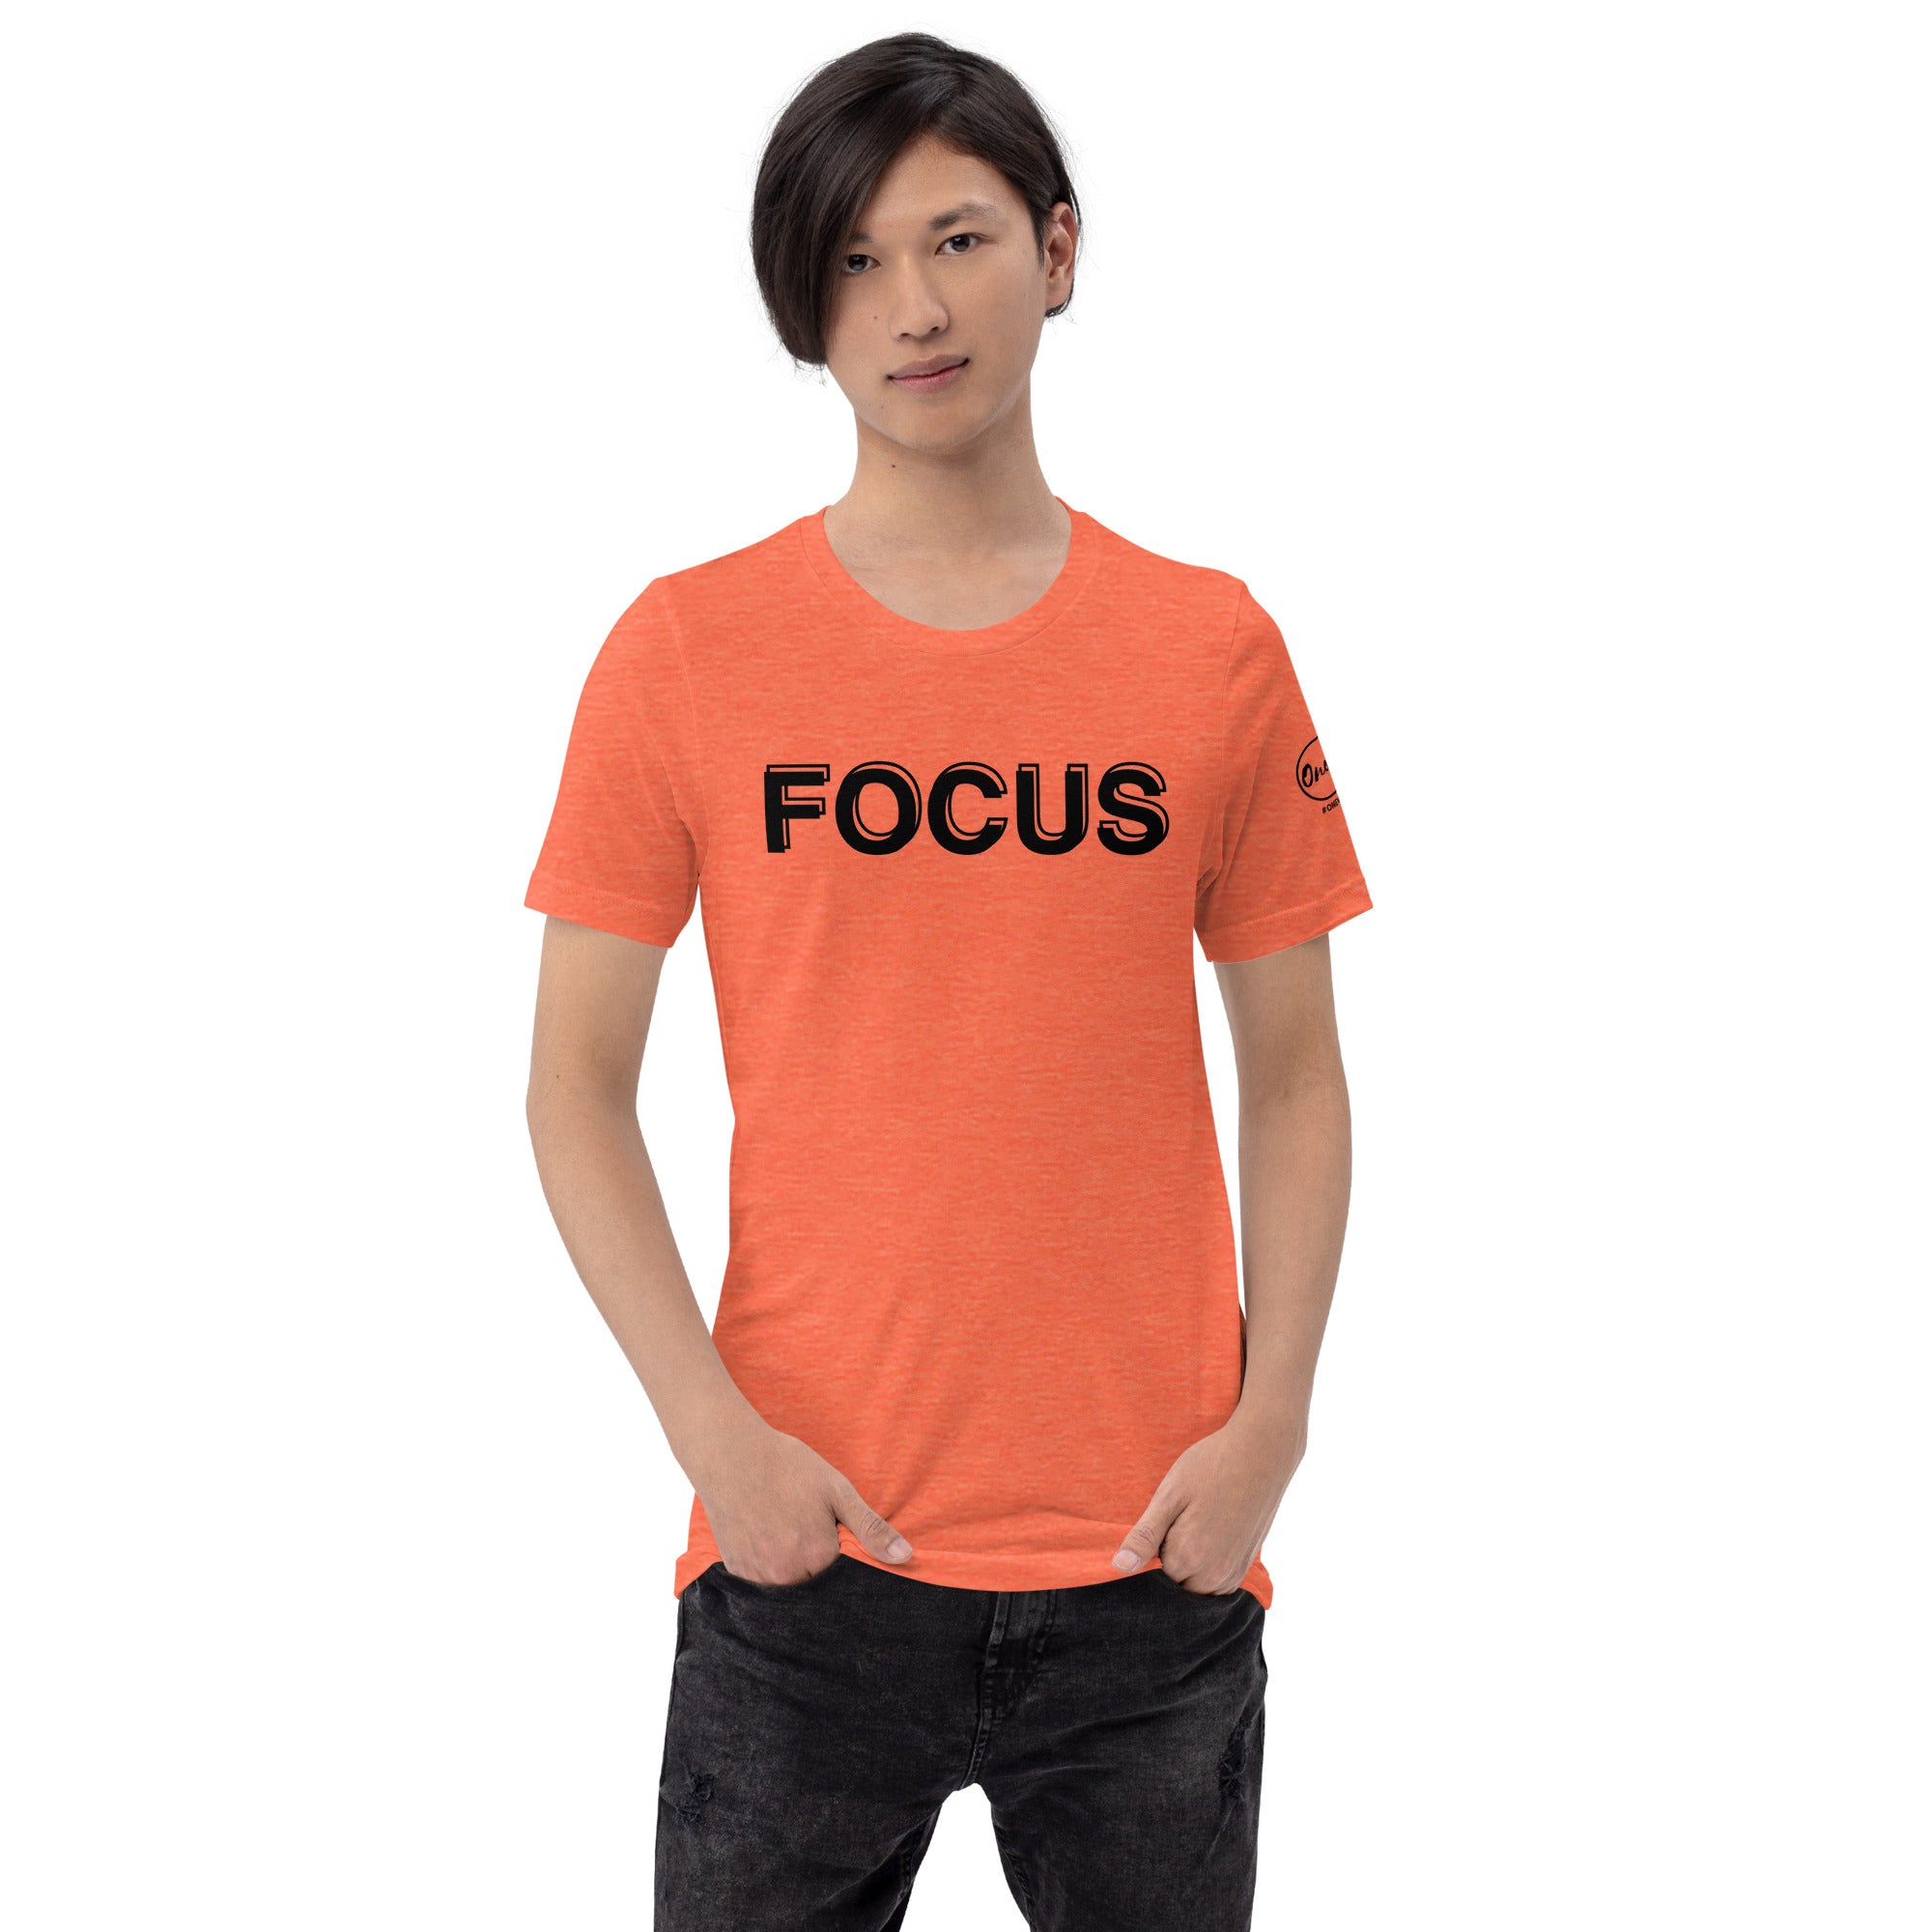 Camiseta inspirada en Focus | Ropa de fe | Camiseta unisex de una palabra